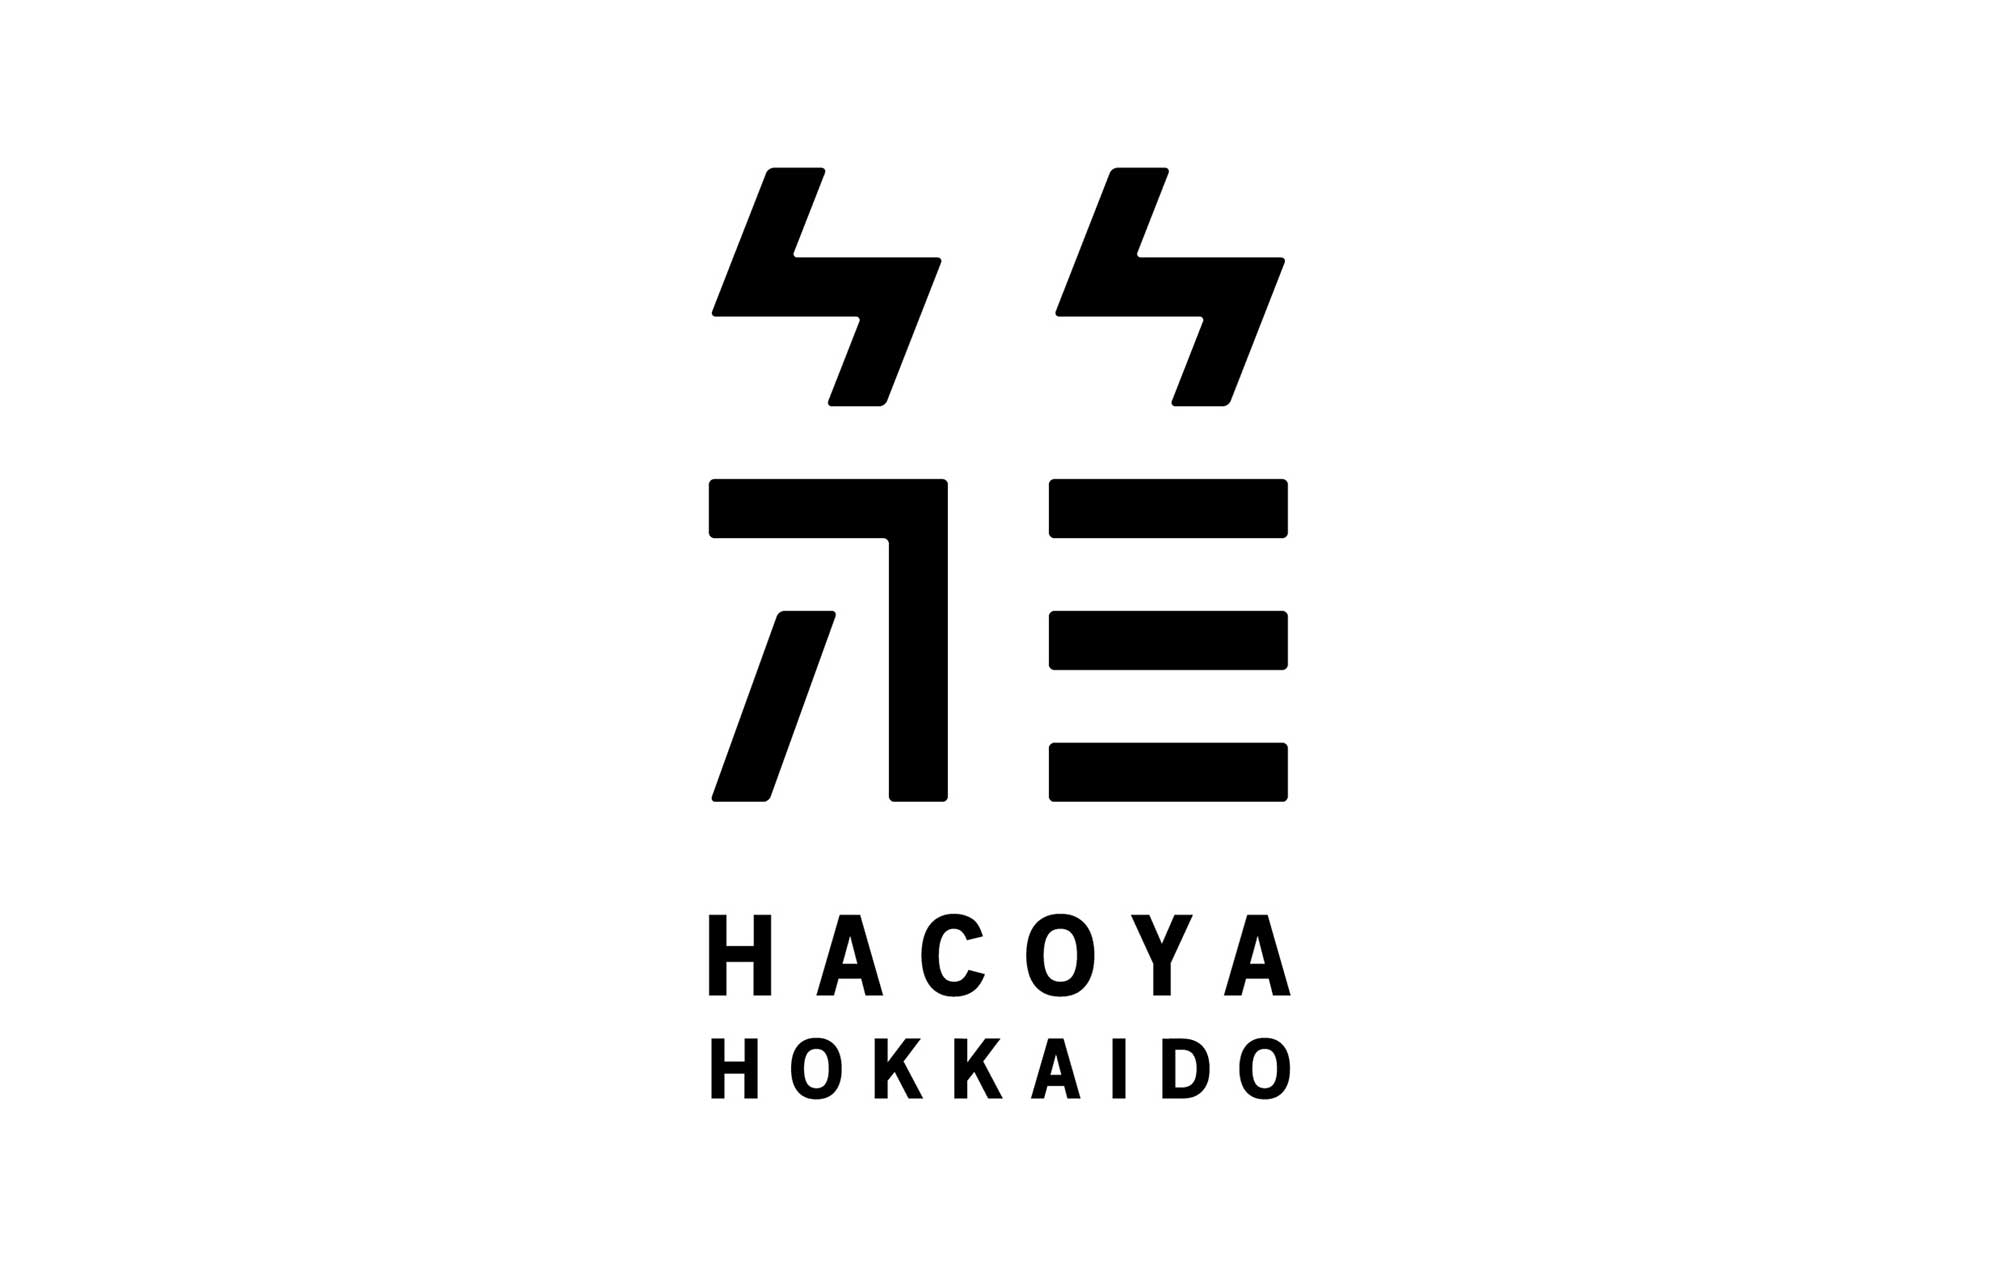 Hacoya Hokkaido